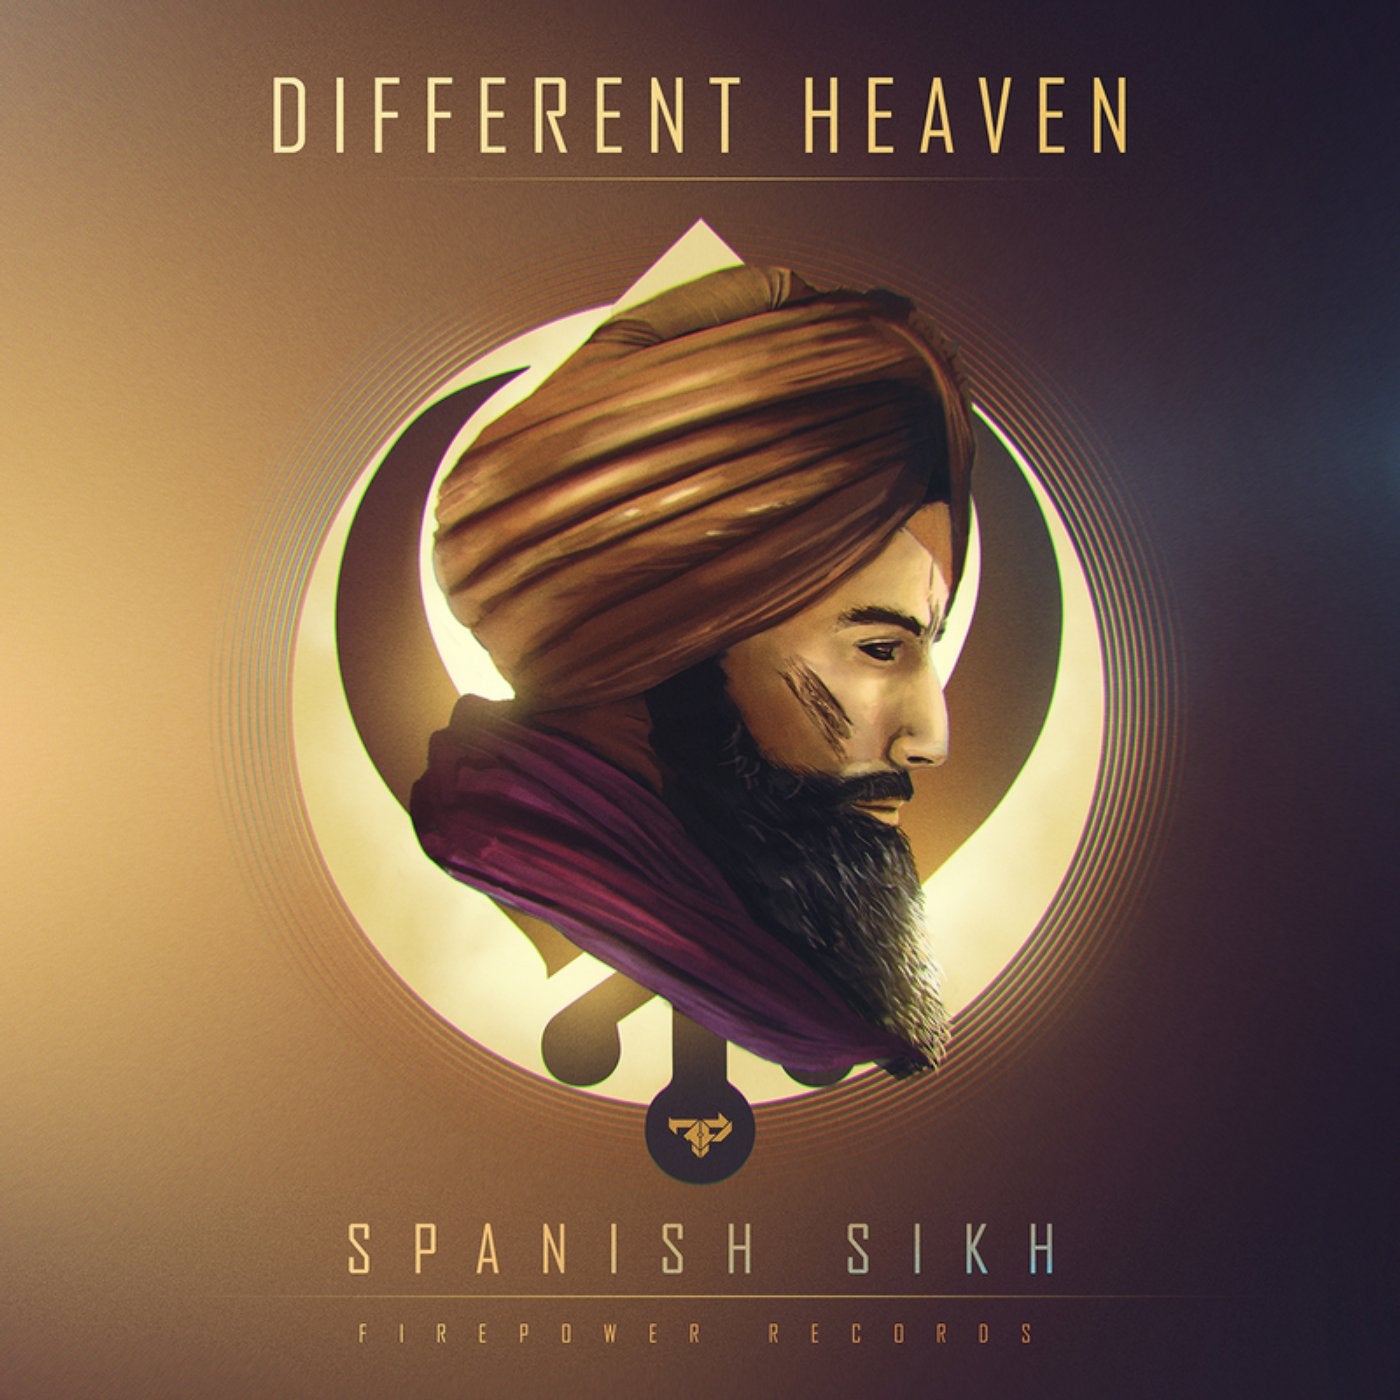 Spanish Sikh